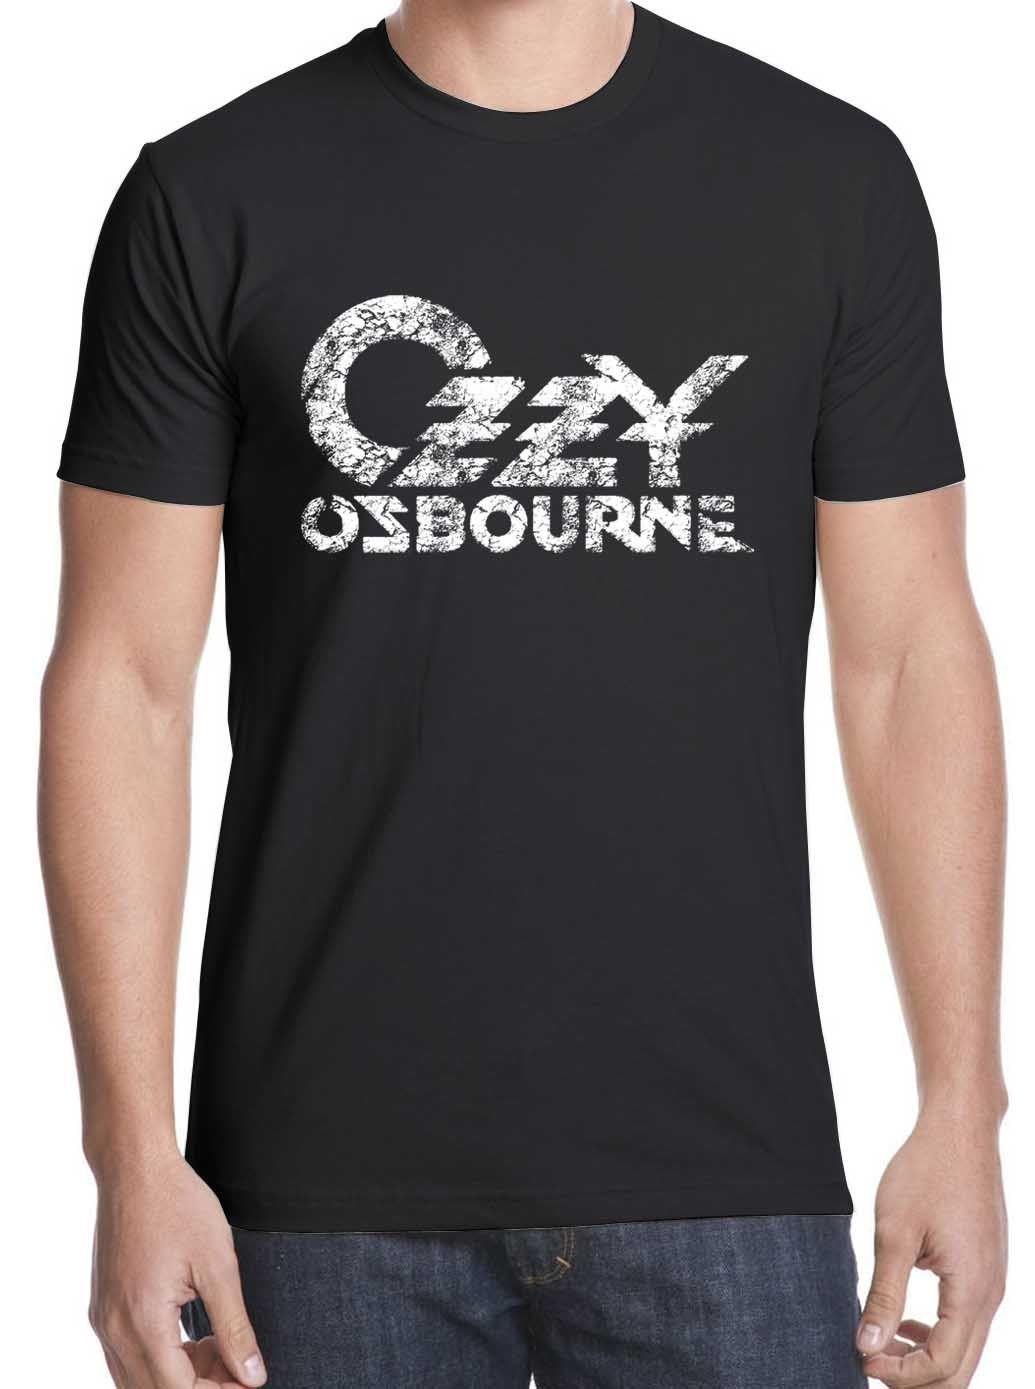 New Ozzy Logo - Hot Sale Ozzy Osbourne T-shirt New Tshirt Logo t shirt S-XXL free ...